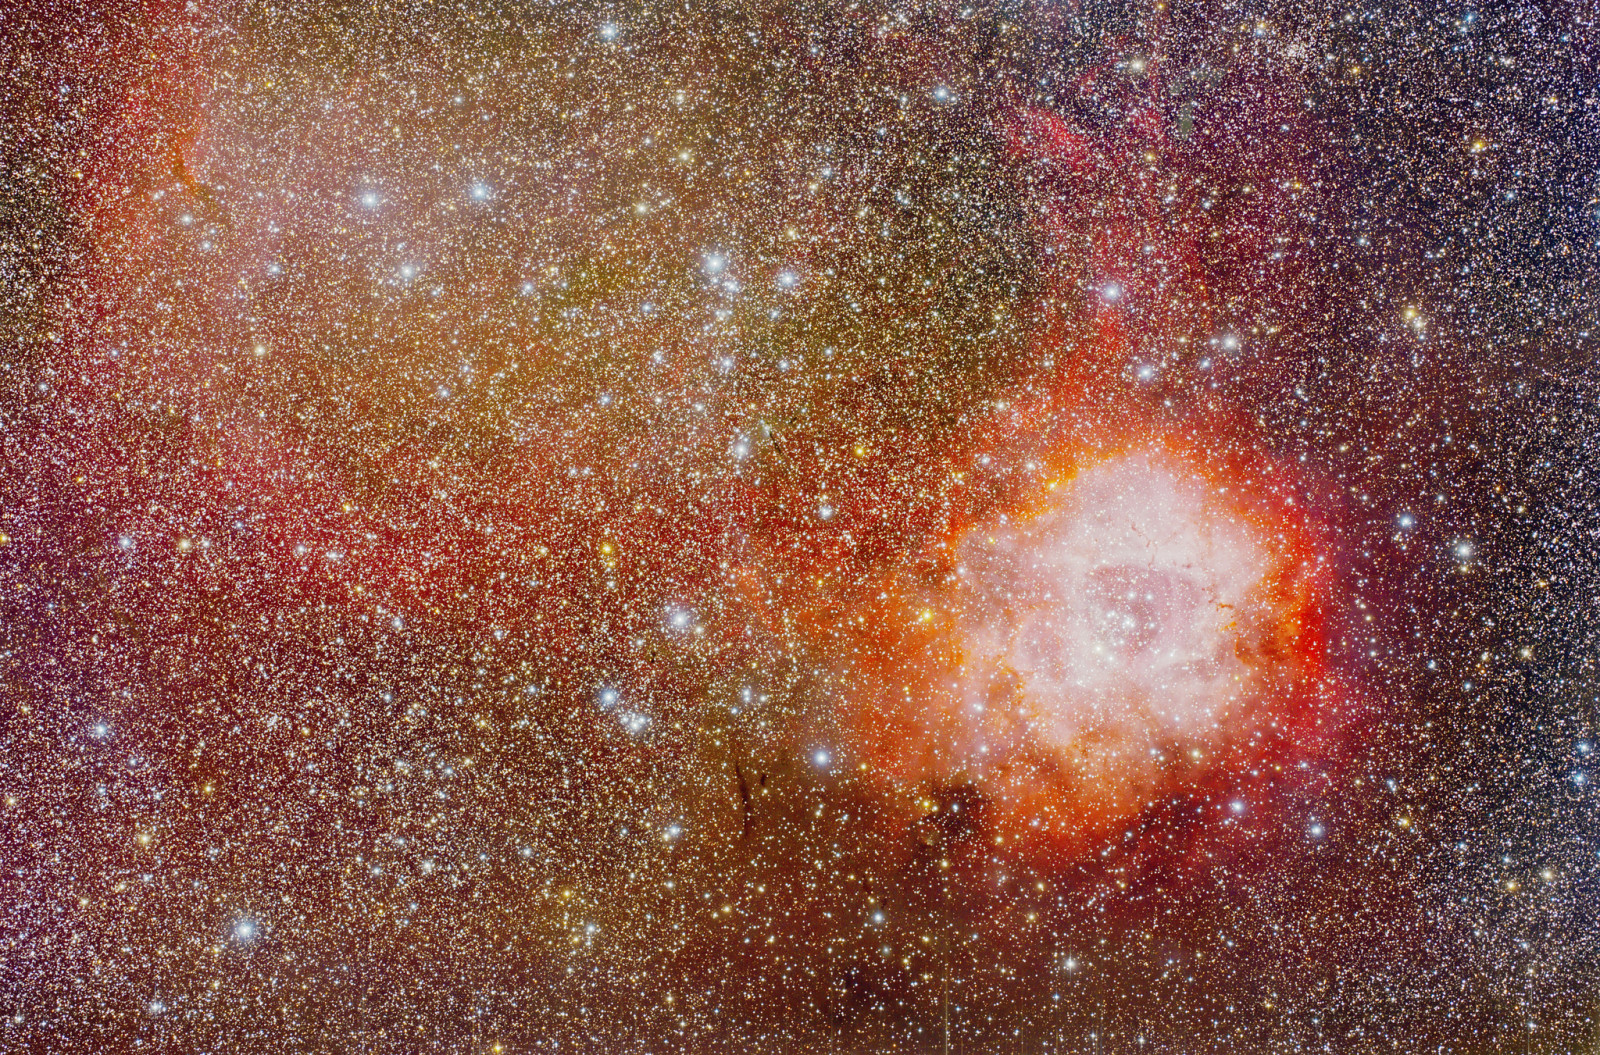 ช่องว่าง, กลุ่มก๊าซ, ลายรูปดอกกุหลาบ, ตัวยูนิคอน, ในกลุ่มดาว, ทางออก, NGC 2237